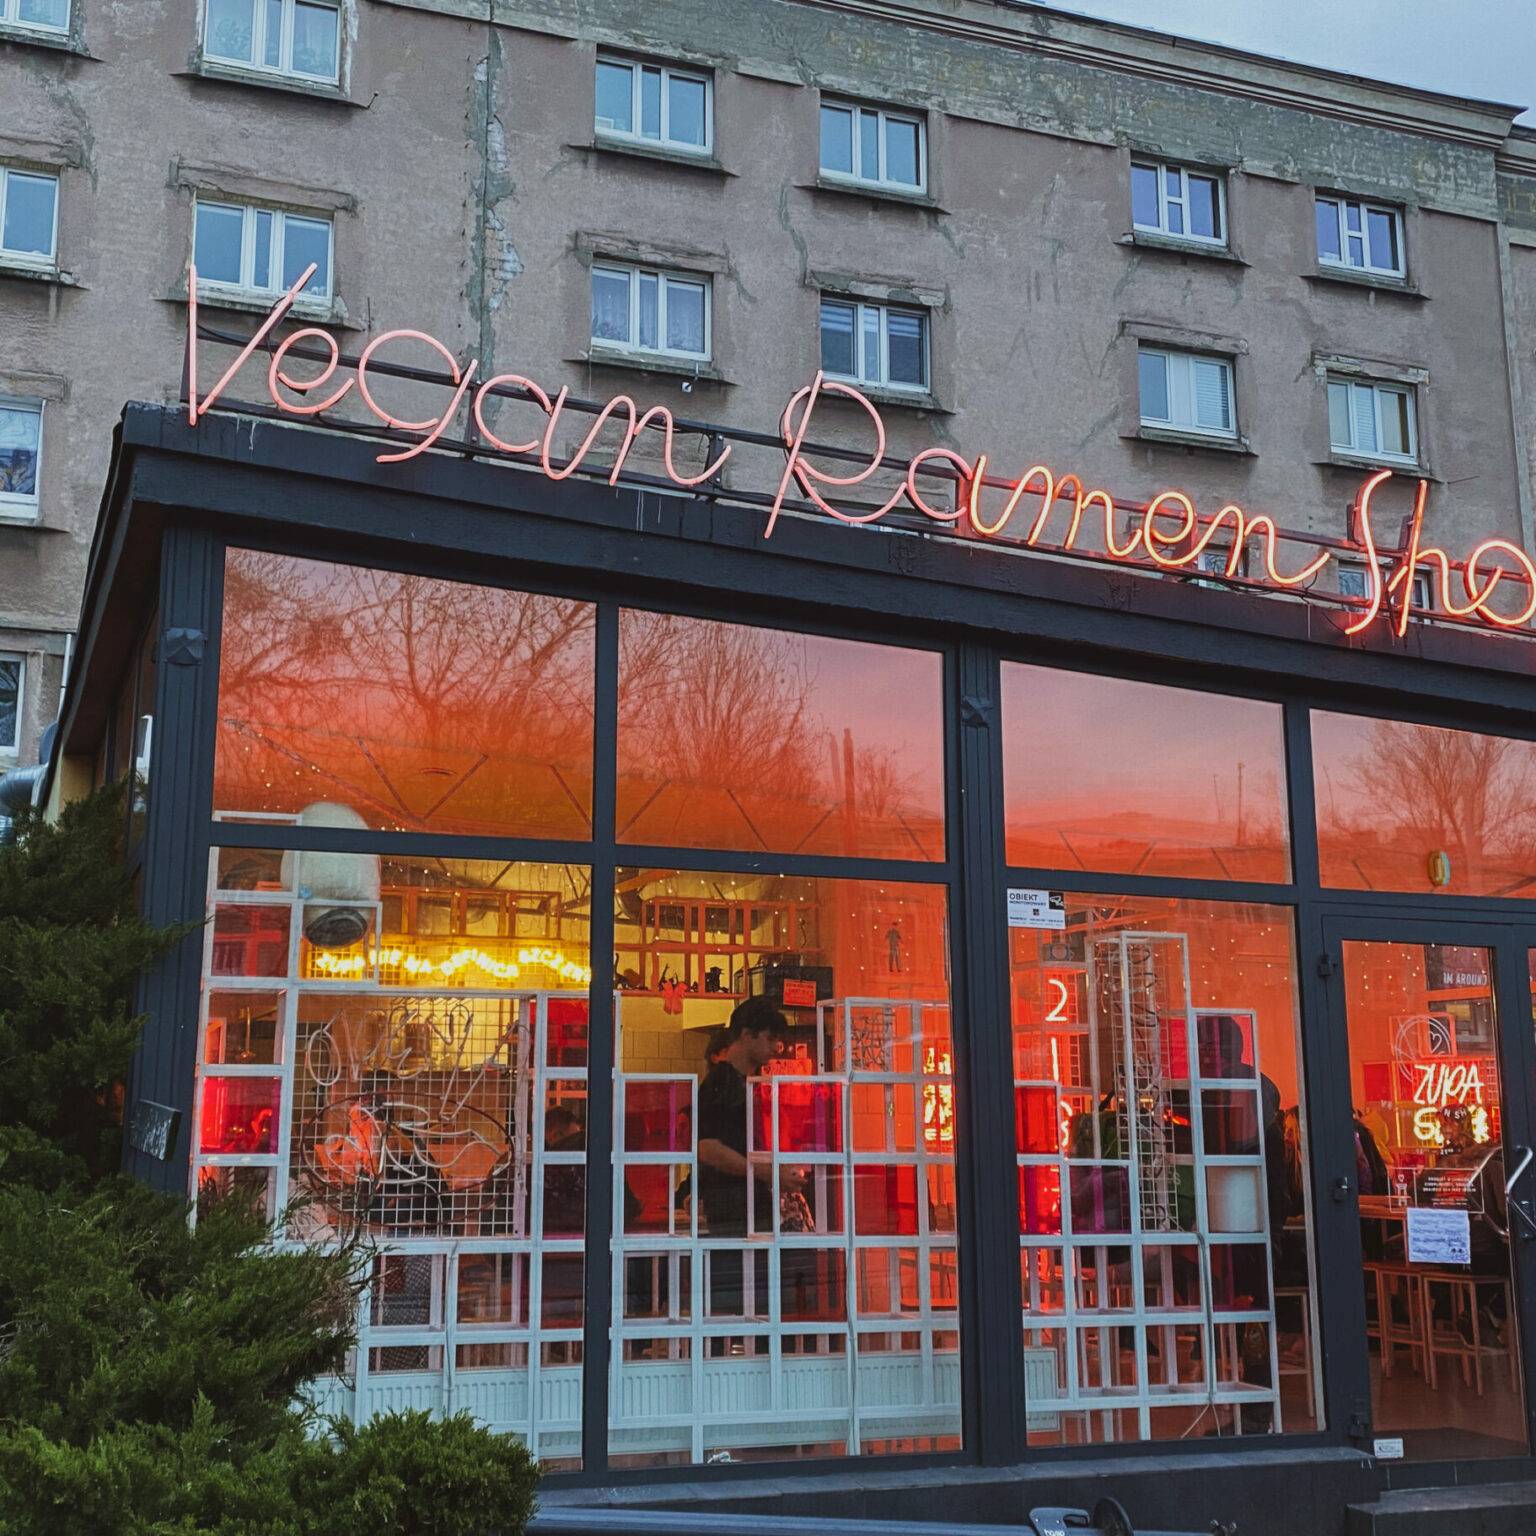 Der Vegan Ramen Shop sticht mit seinem offenen Ambiente und der bunten, leuchtenden Inneneinrichtung vor grauer Häuserkulisse deutlich heraus.